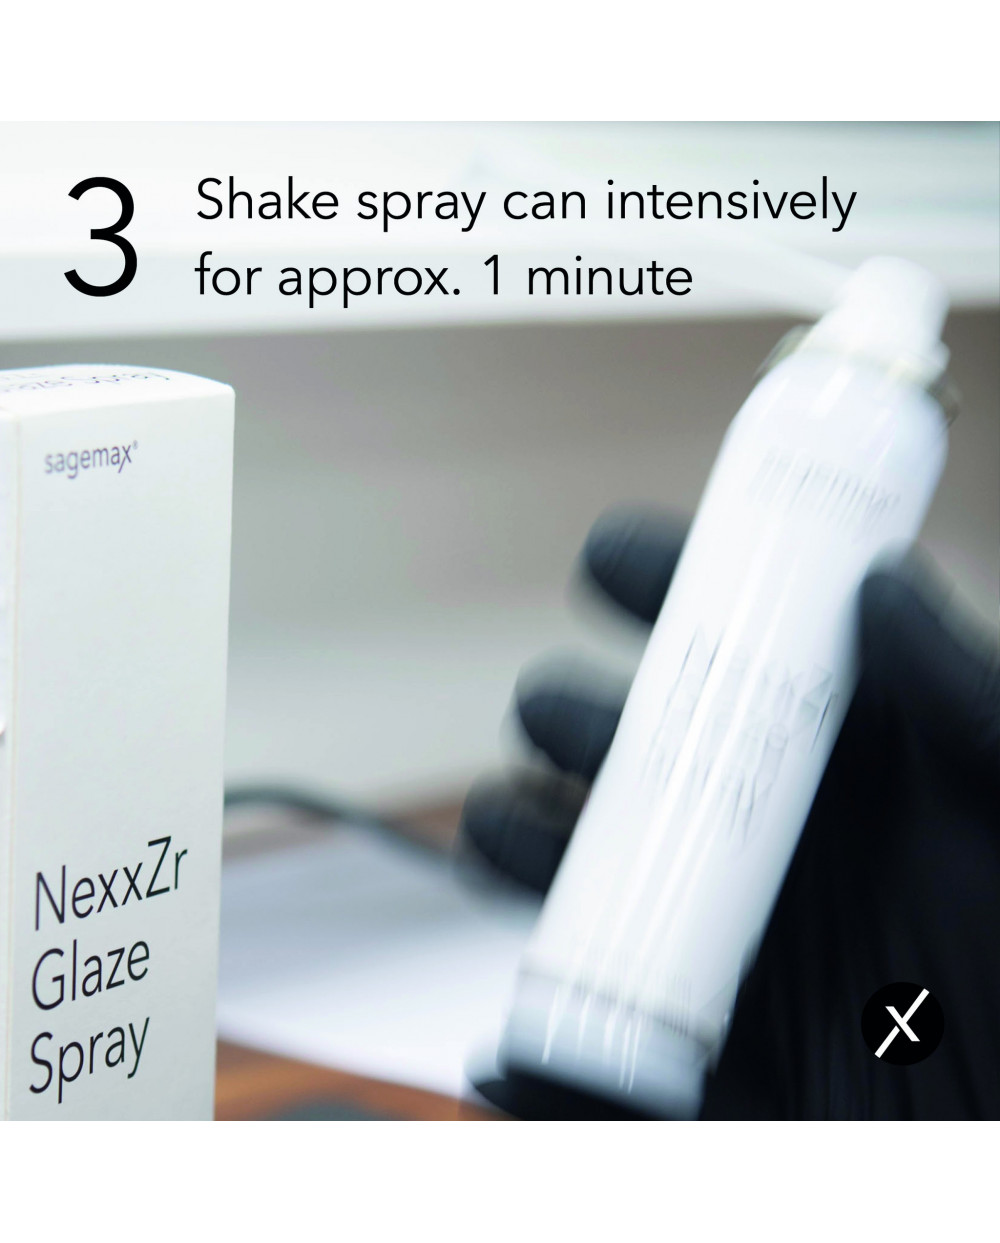 NexxZr Glaze Spray